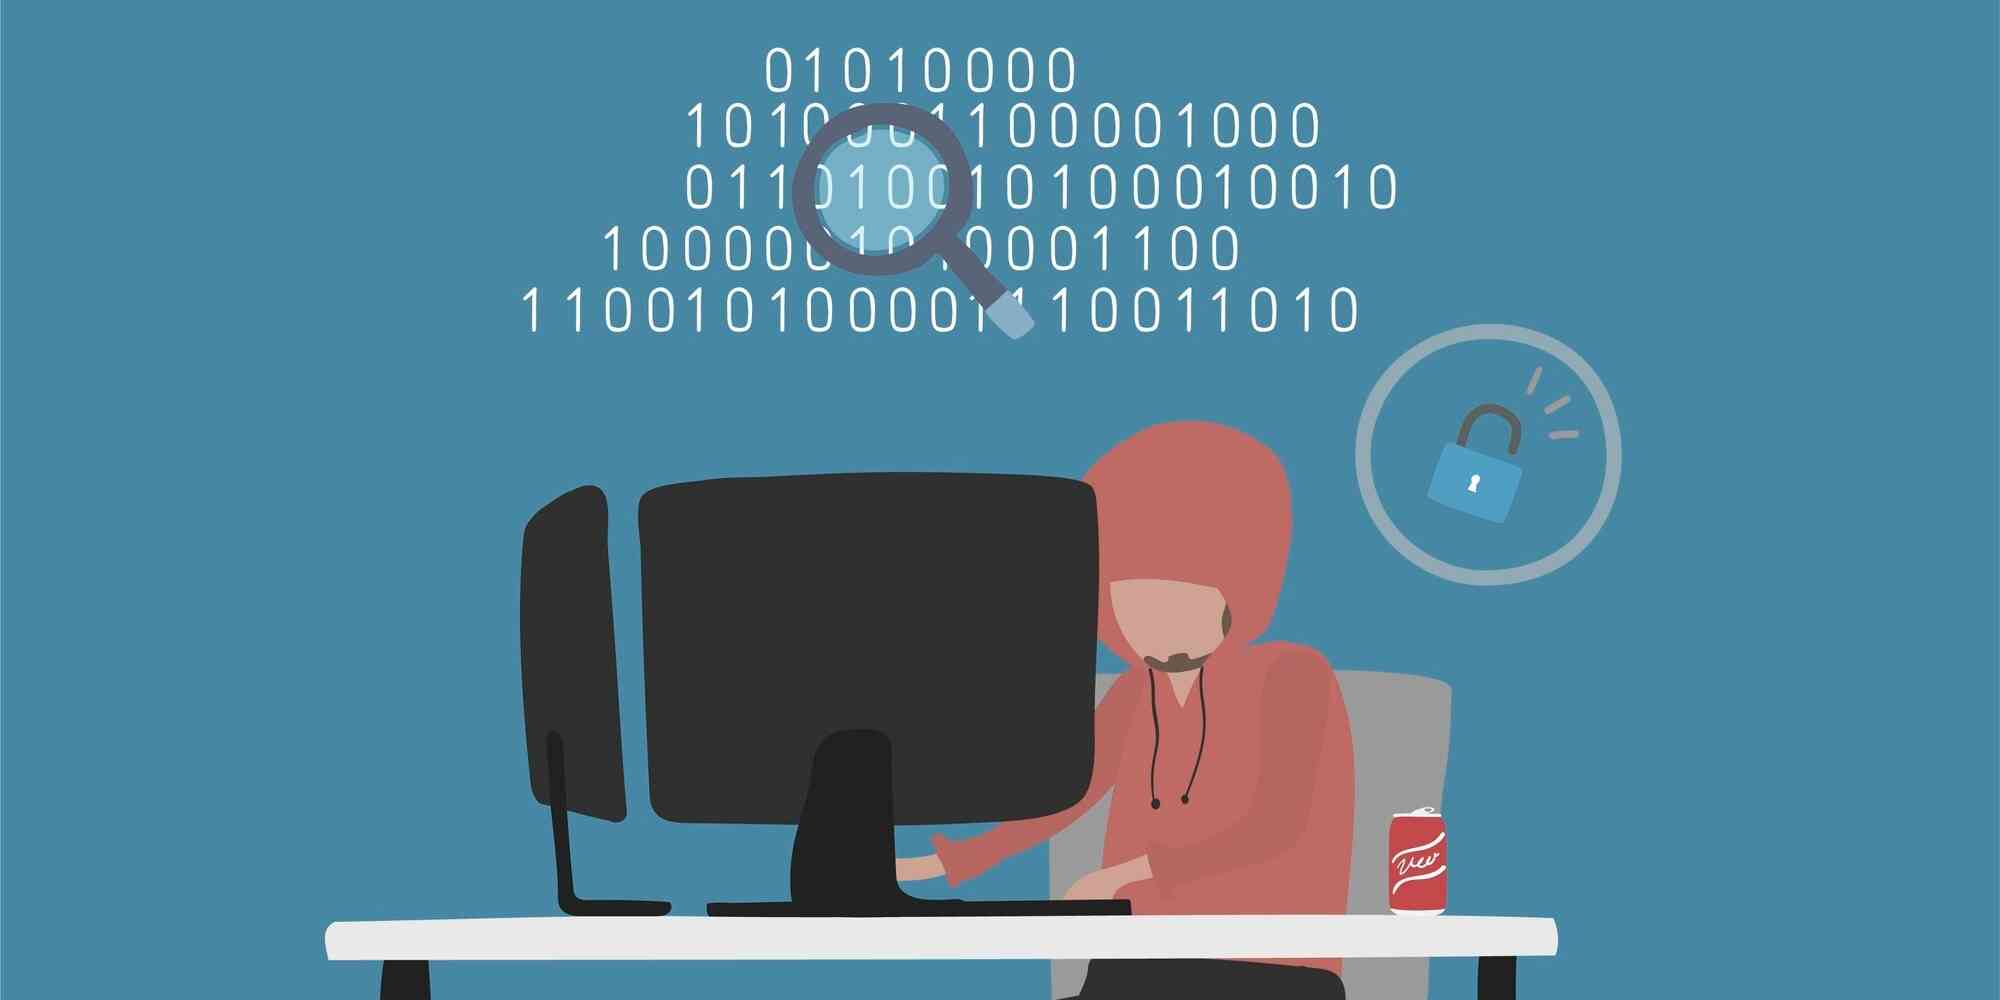 一个穿红衣服的人坐在电脑前，电脑屏幕是黑色的。在电脑屏幕上有一些二进制代码和一个锁的图标。